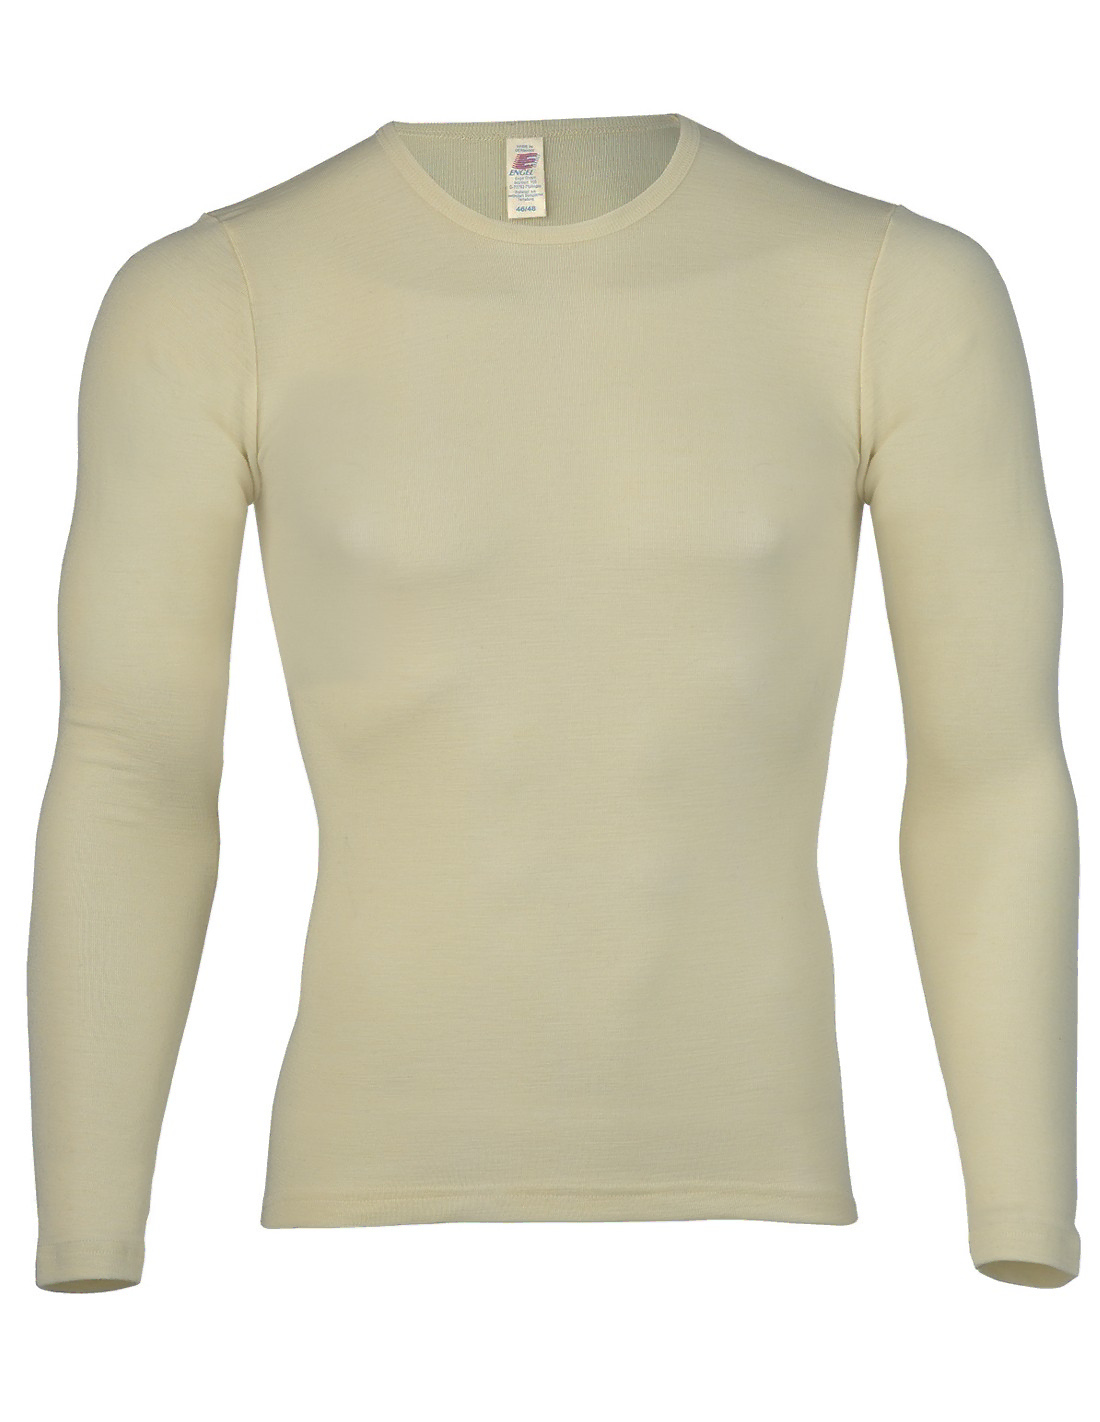 Image of Heren Shirt Lange Mouw Zijde Wol Engel Natur, Kleur Gebroken wit, Maat 46/48 - Medium